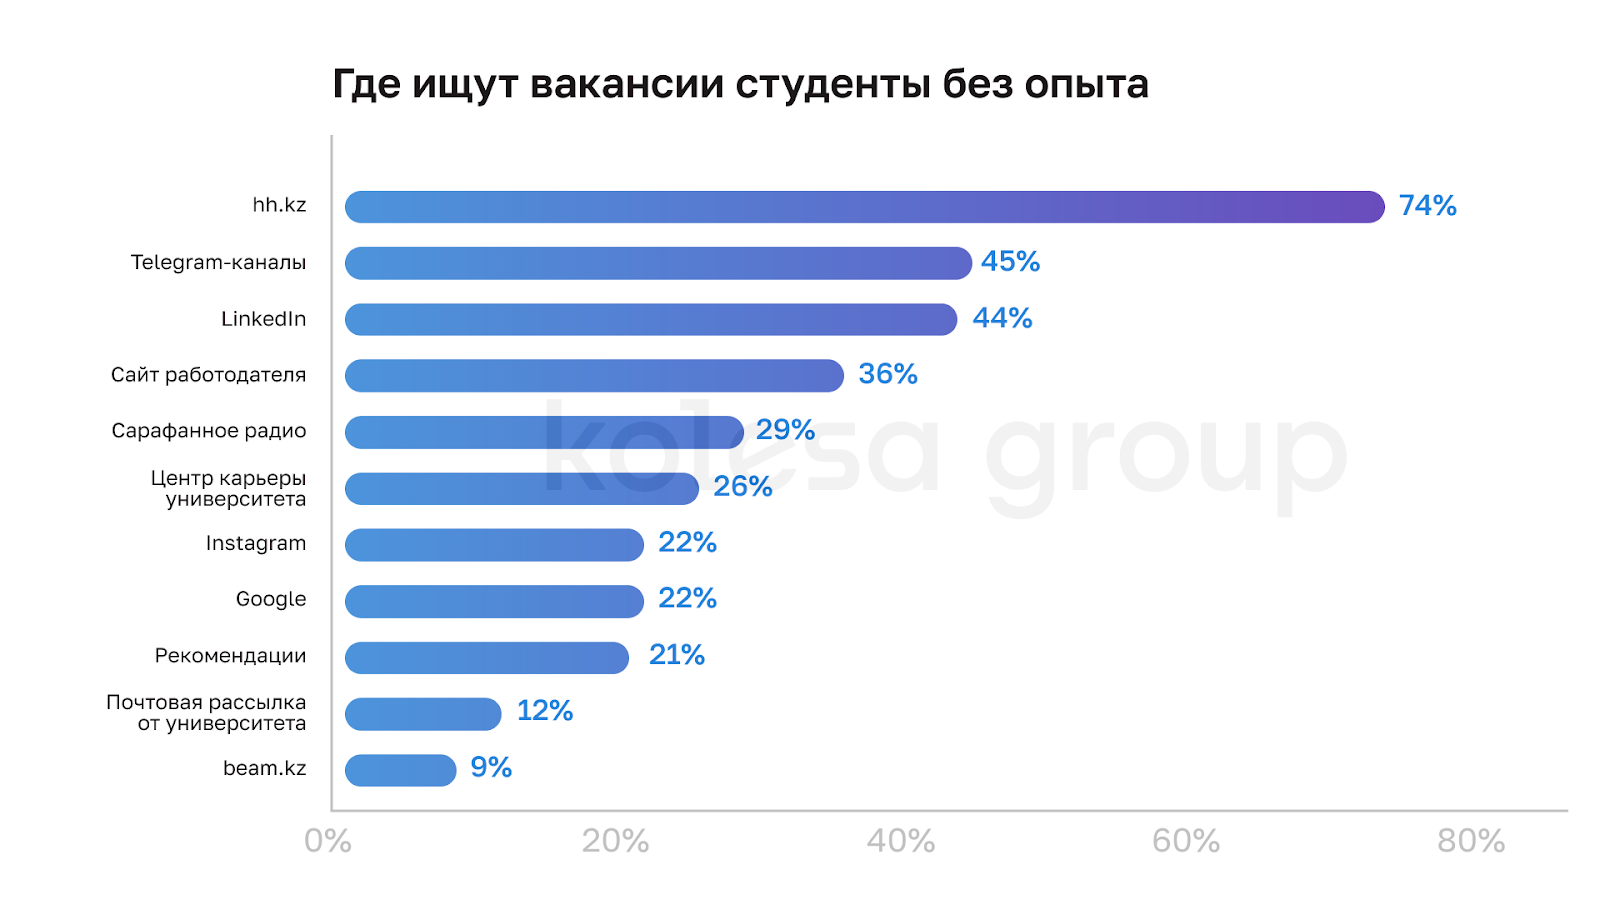 Топ-5 факторов для казахстанских студентов при выборе работодателя в IT — исследование Kolesa Group